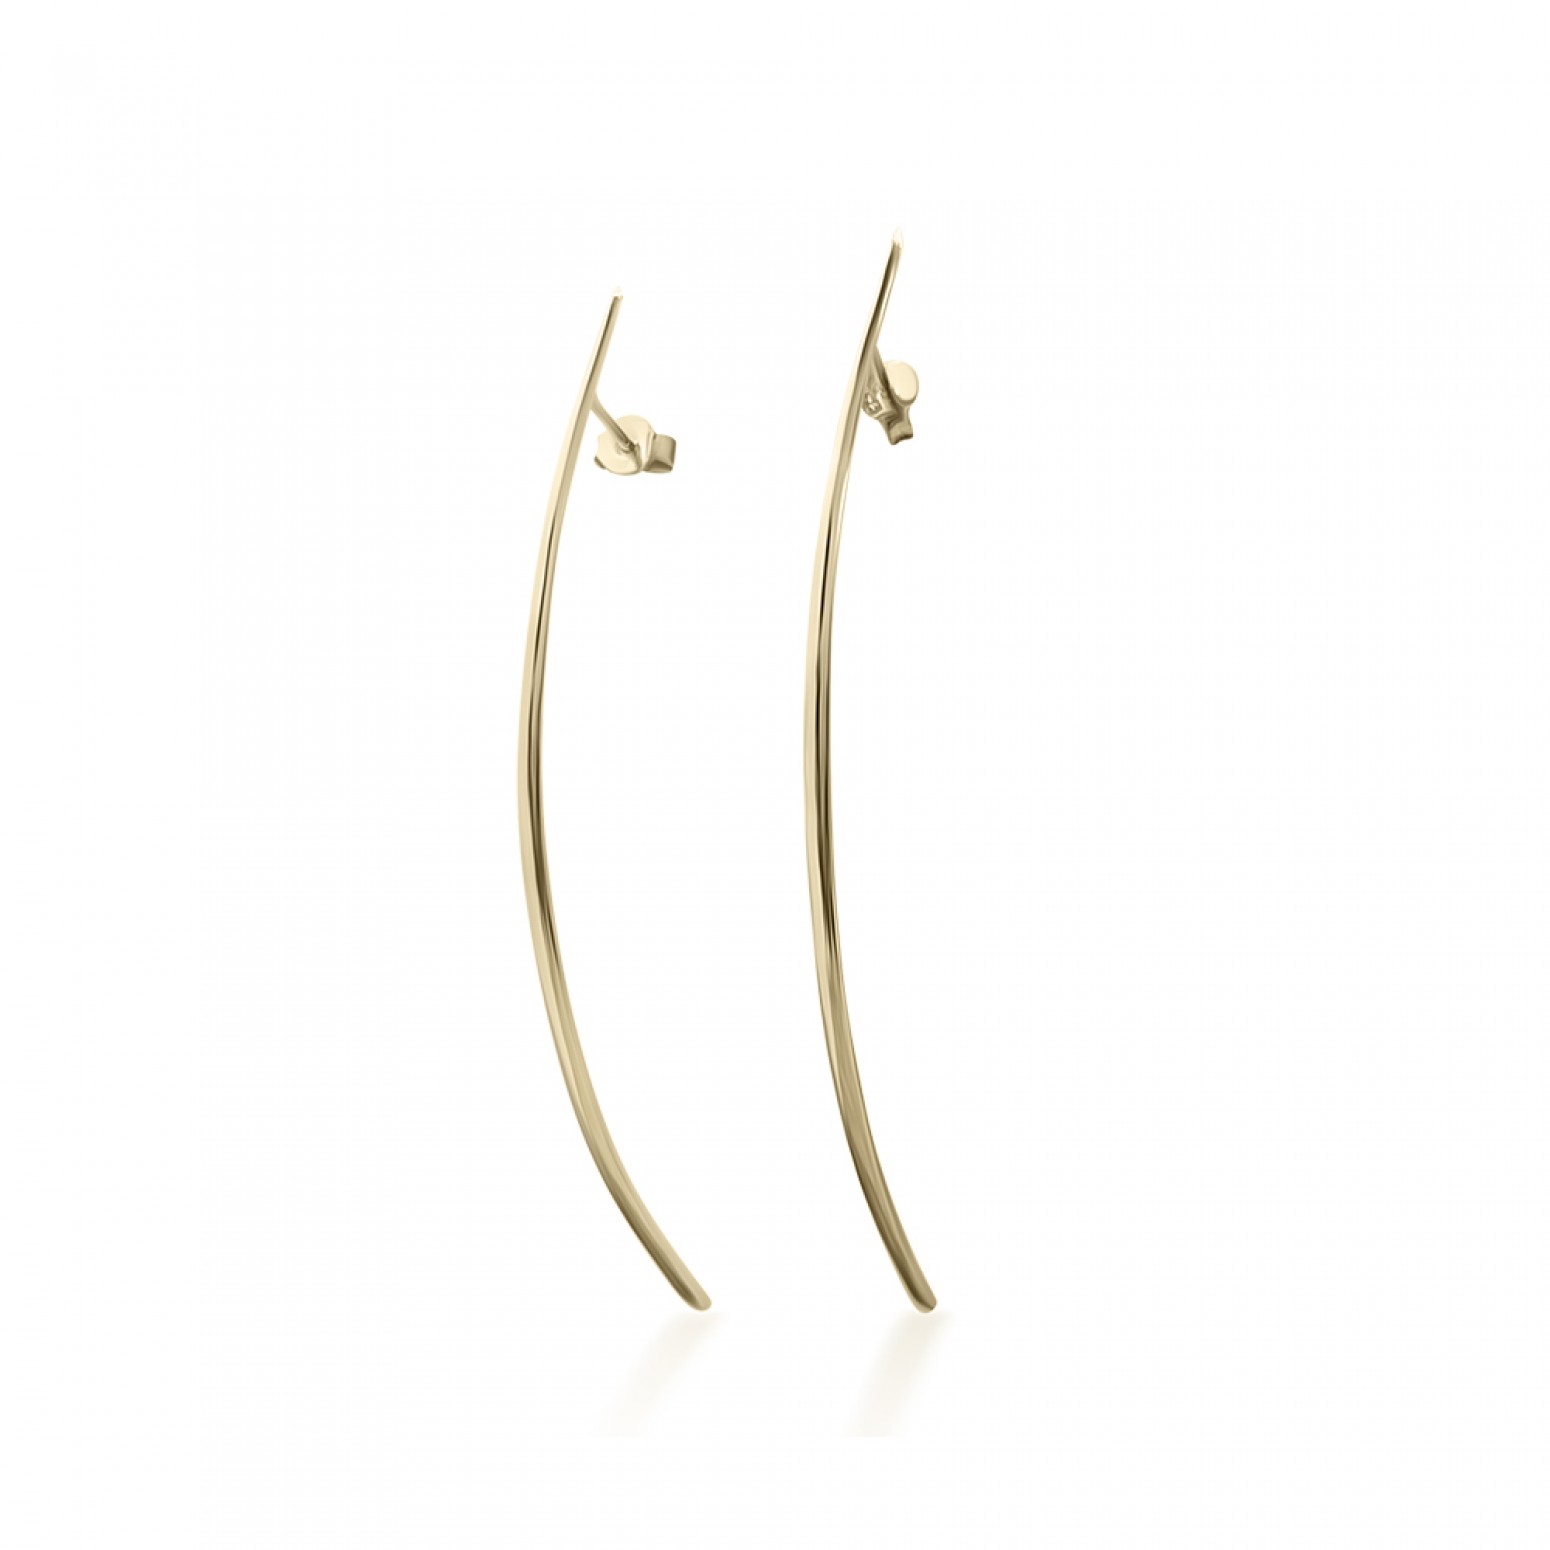 Dangle earrings K9 gold, sk3461 EARRINGS Κοσμηματα - chrilia.gr